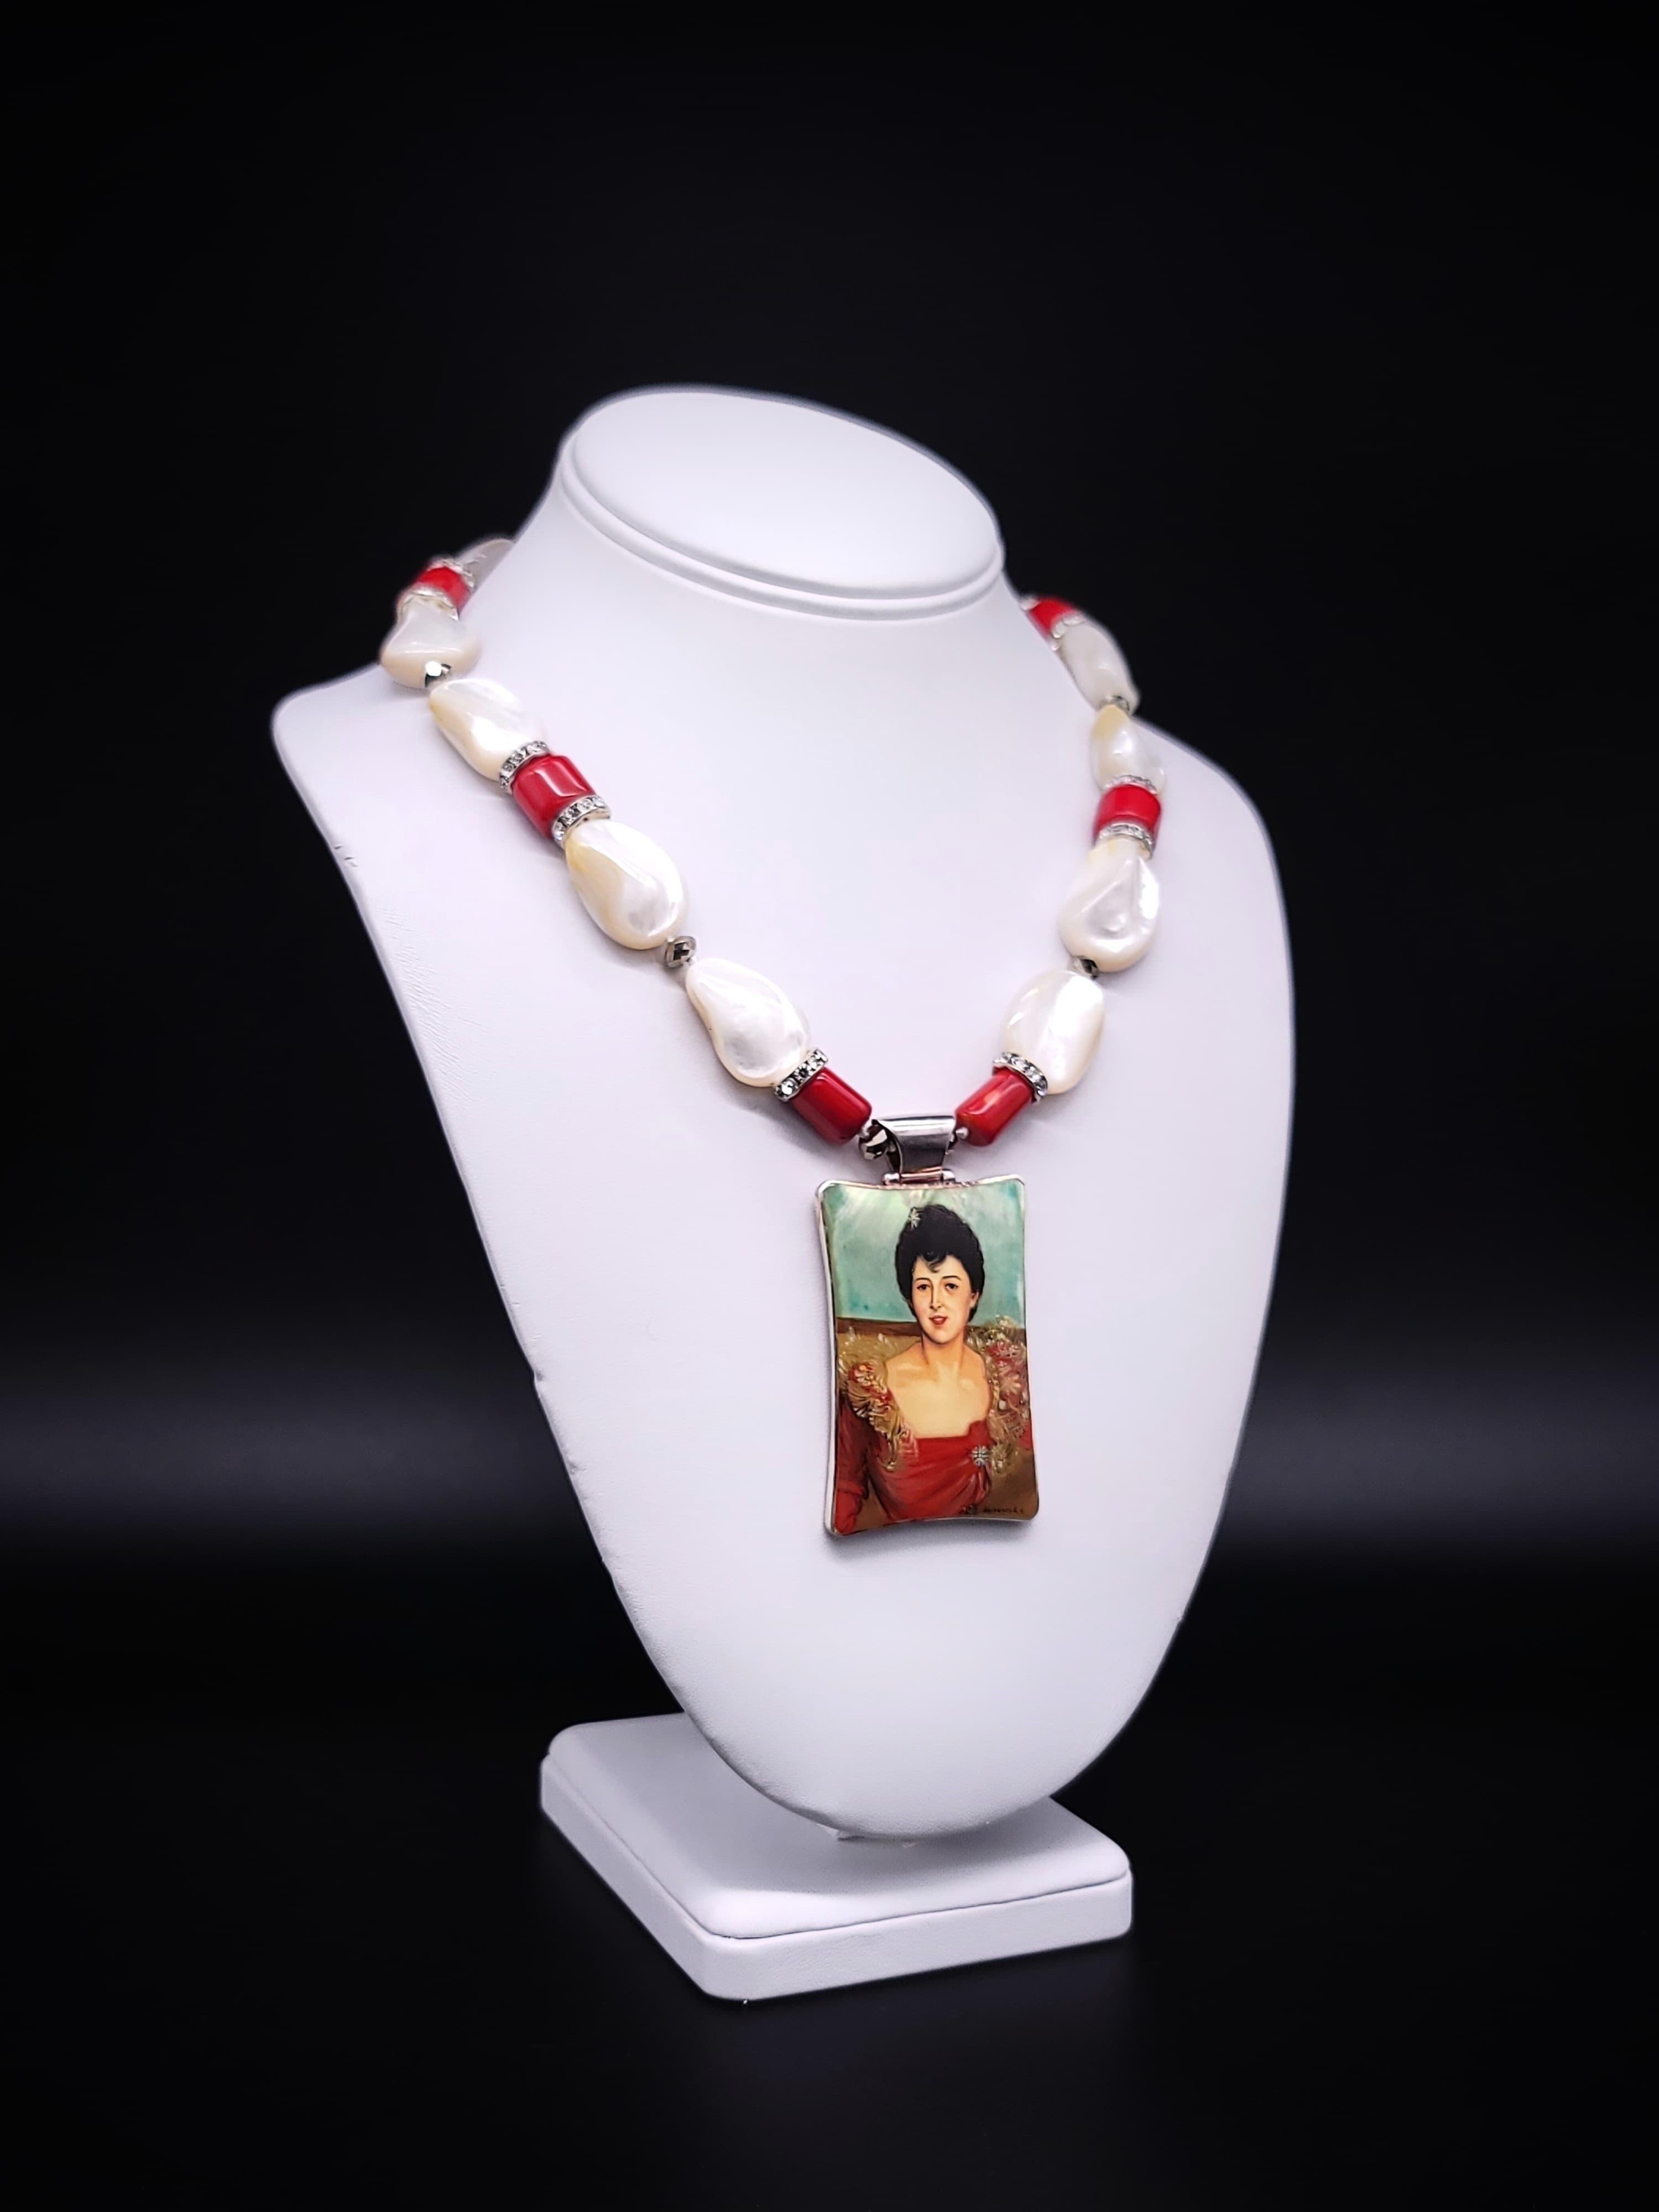 Unique en son genre

Voici un bijou vraiment captivant et sophistiqué - un collier orné de perles de nacre lustrées, élégamment rehaussées de corail, et d'un pendentif envoûtant représentant une magnifique image de Mme Hughes Hammersley.

Le collier